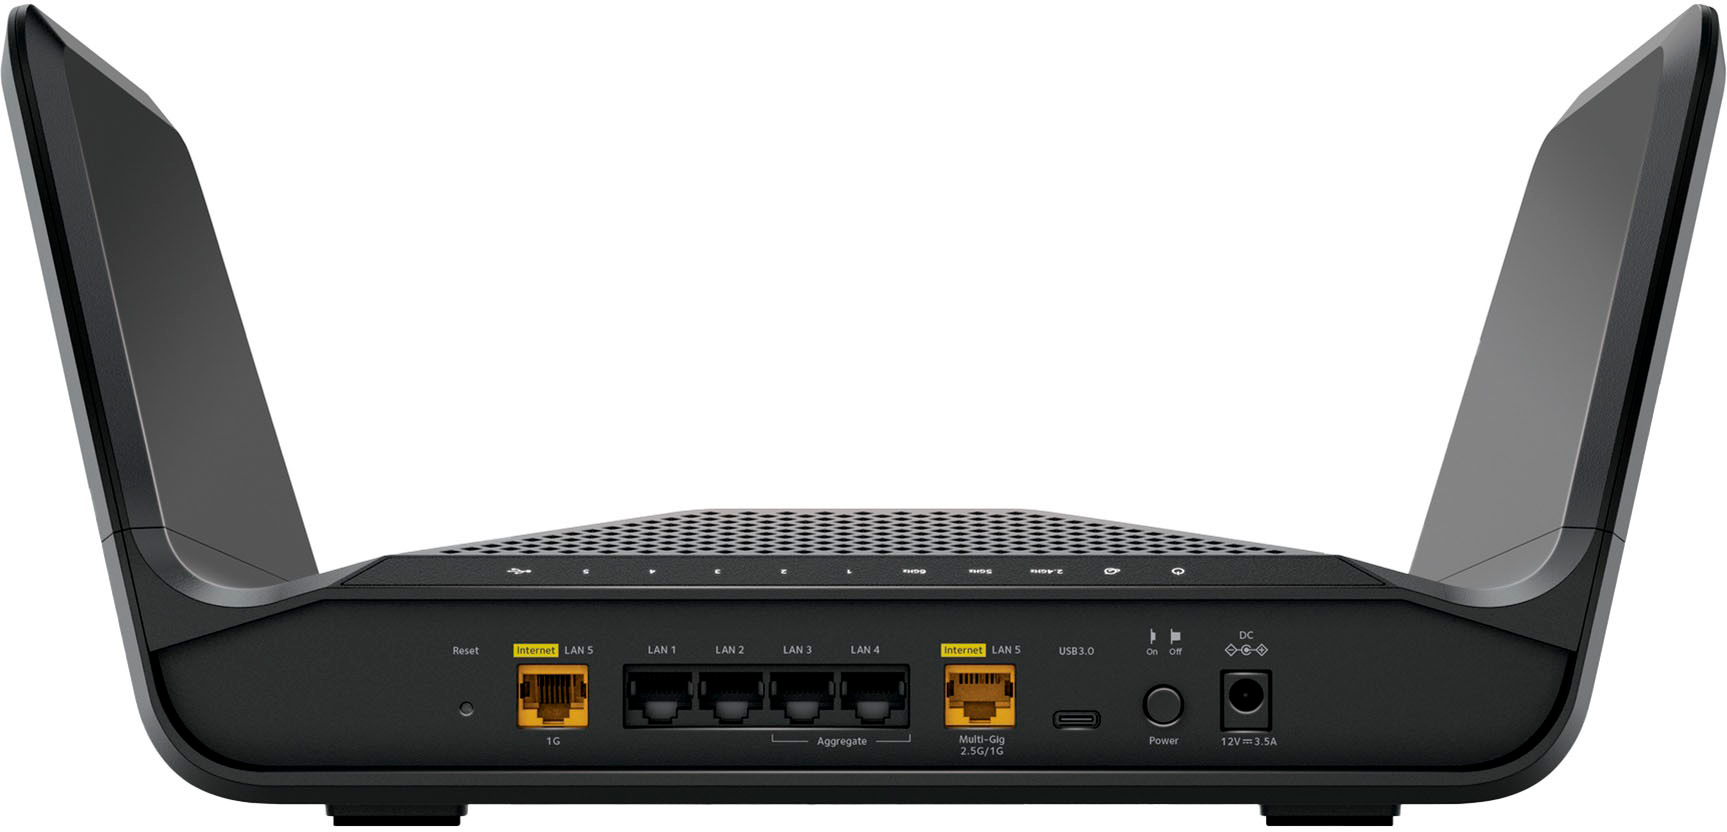 NETGEAR Nighthawk AX5400 WiFi 6 Router - HONEST Review 